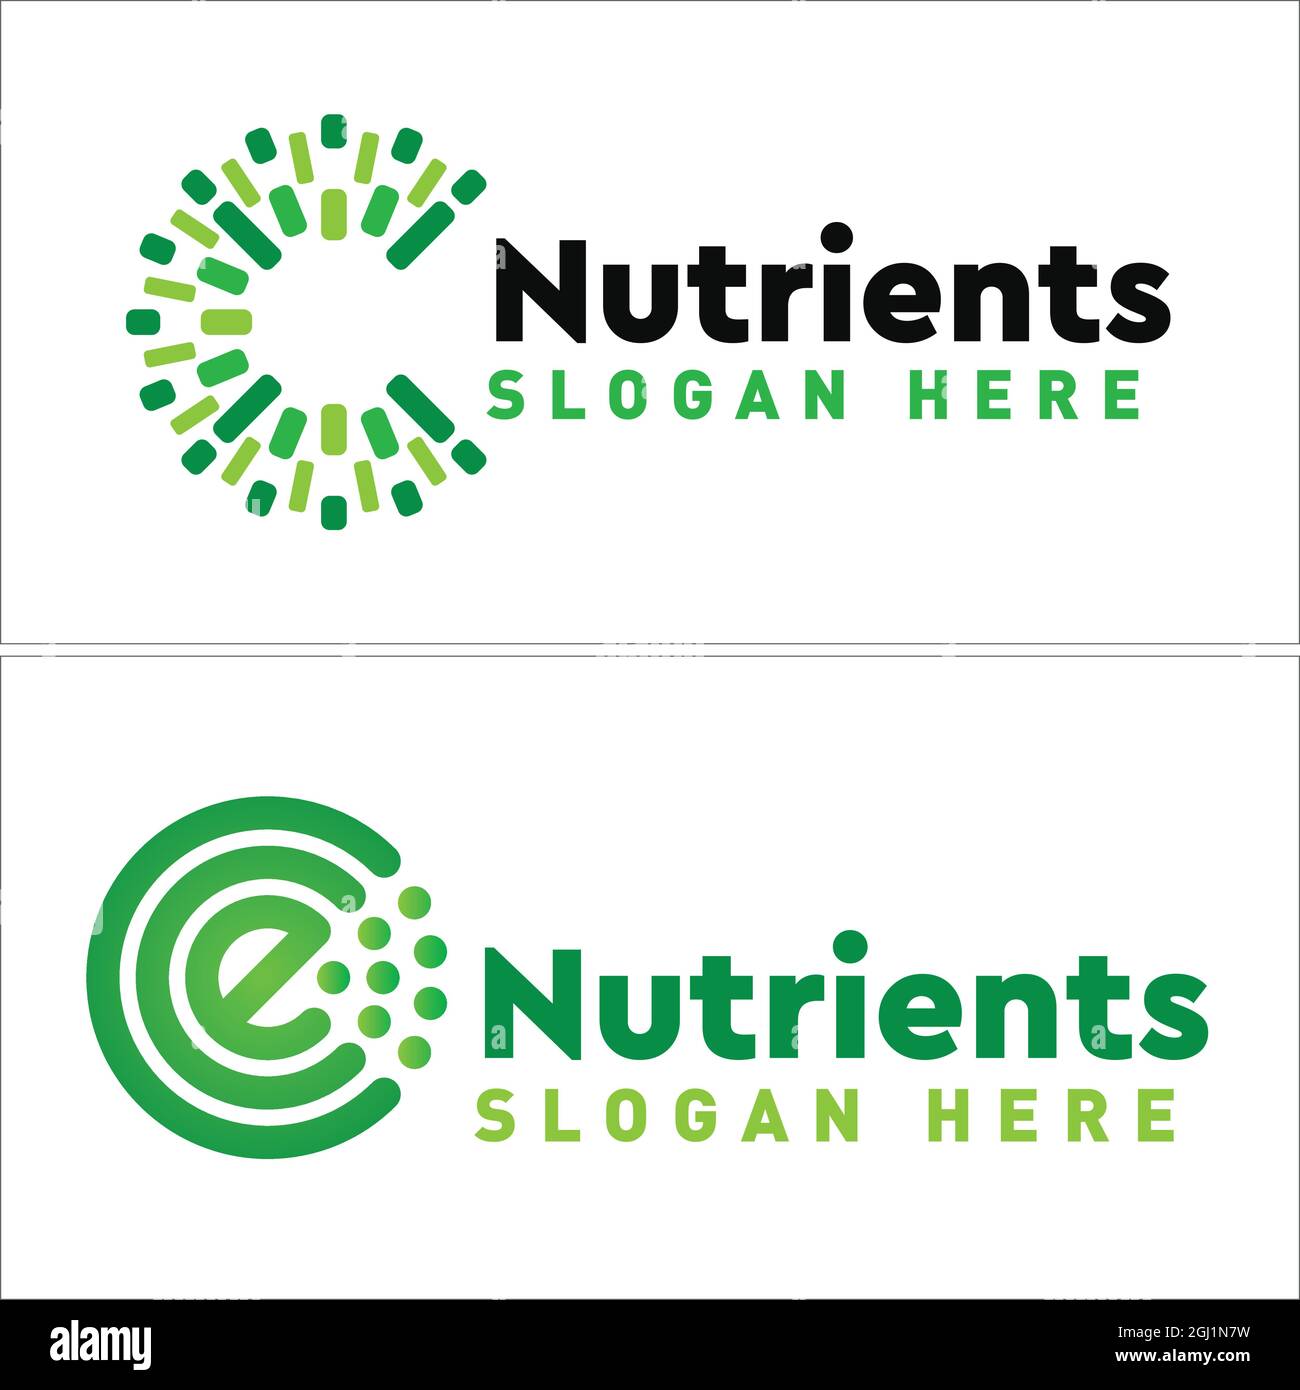 Nutrients medical tech green logo design Stock Vector